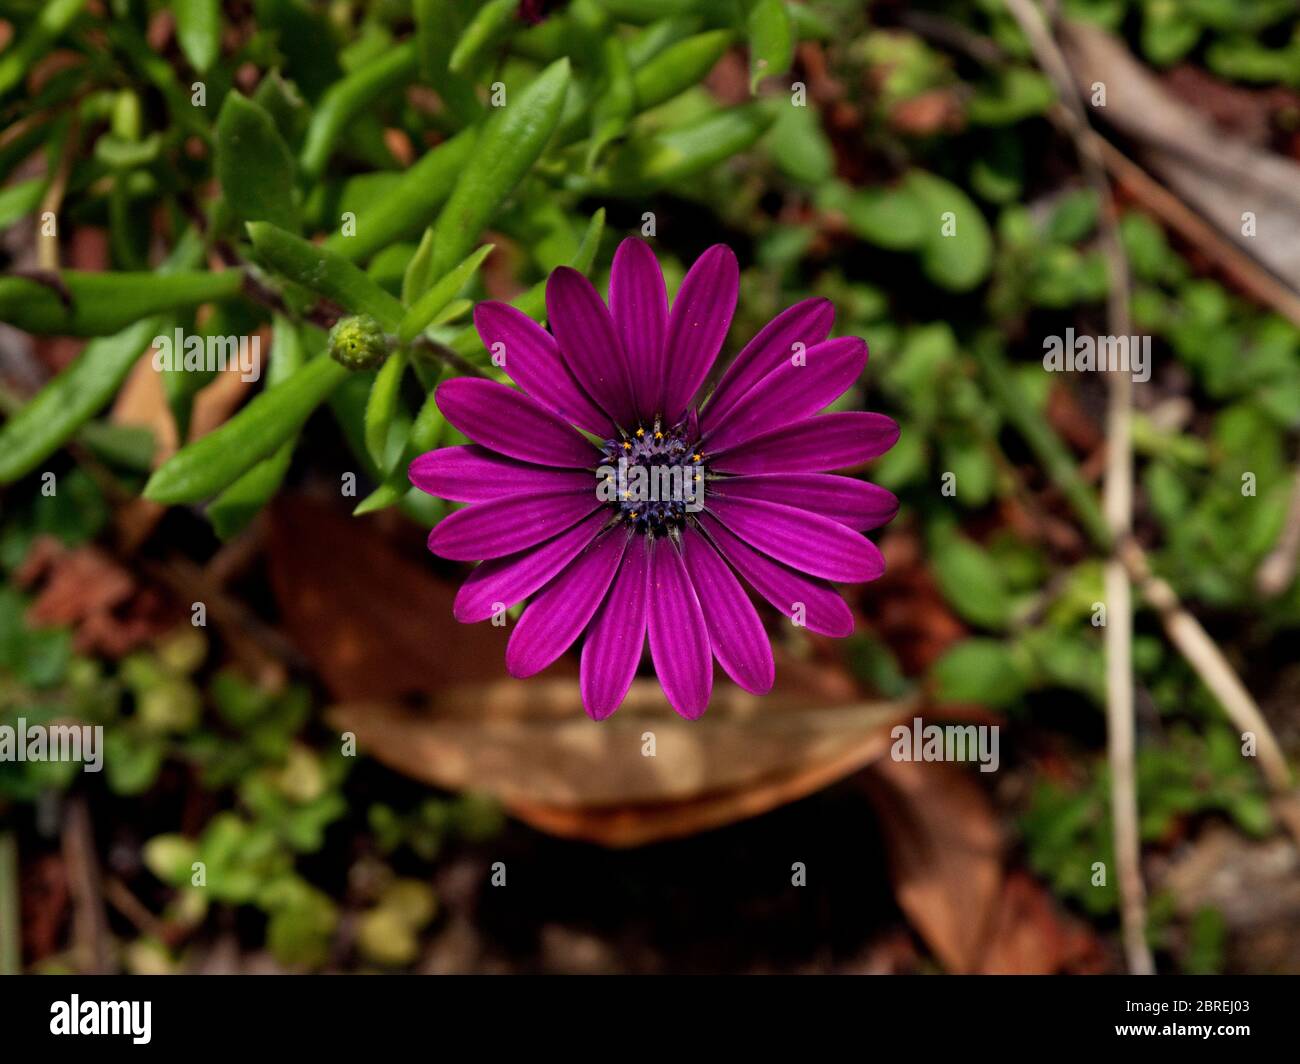 Close up image of an Osteospermum Jucundum flower Stock Photo